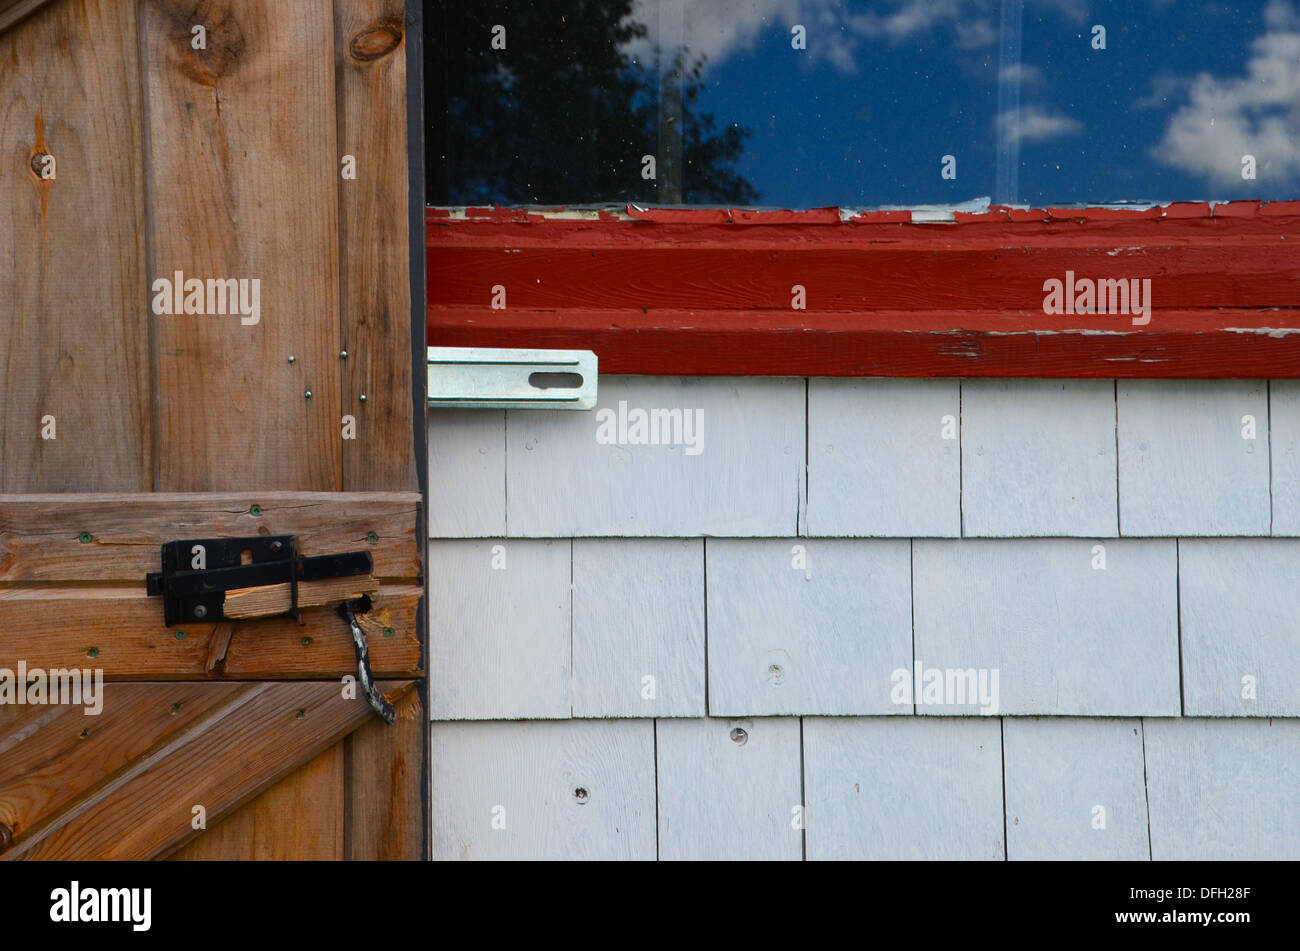 Moyenne géométrique photo d'une porte de grange en bois brun contre white barn bardeaux, châssis de fenêtre rouge et un ciel bleu, la réflexion de la fenêtre Banque D'Images